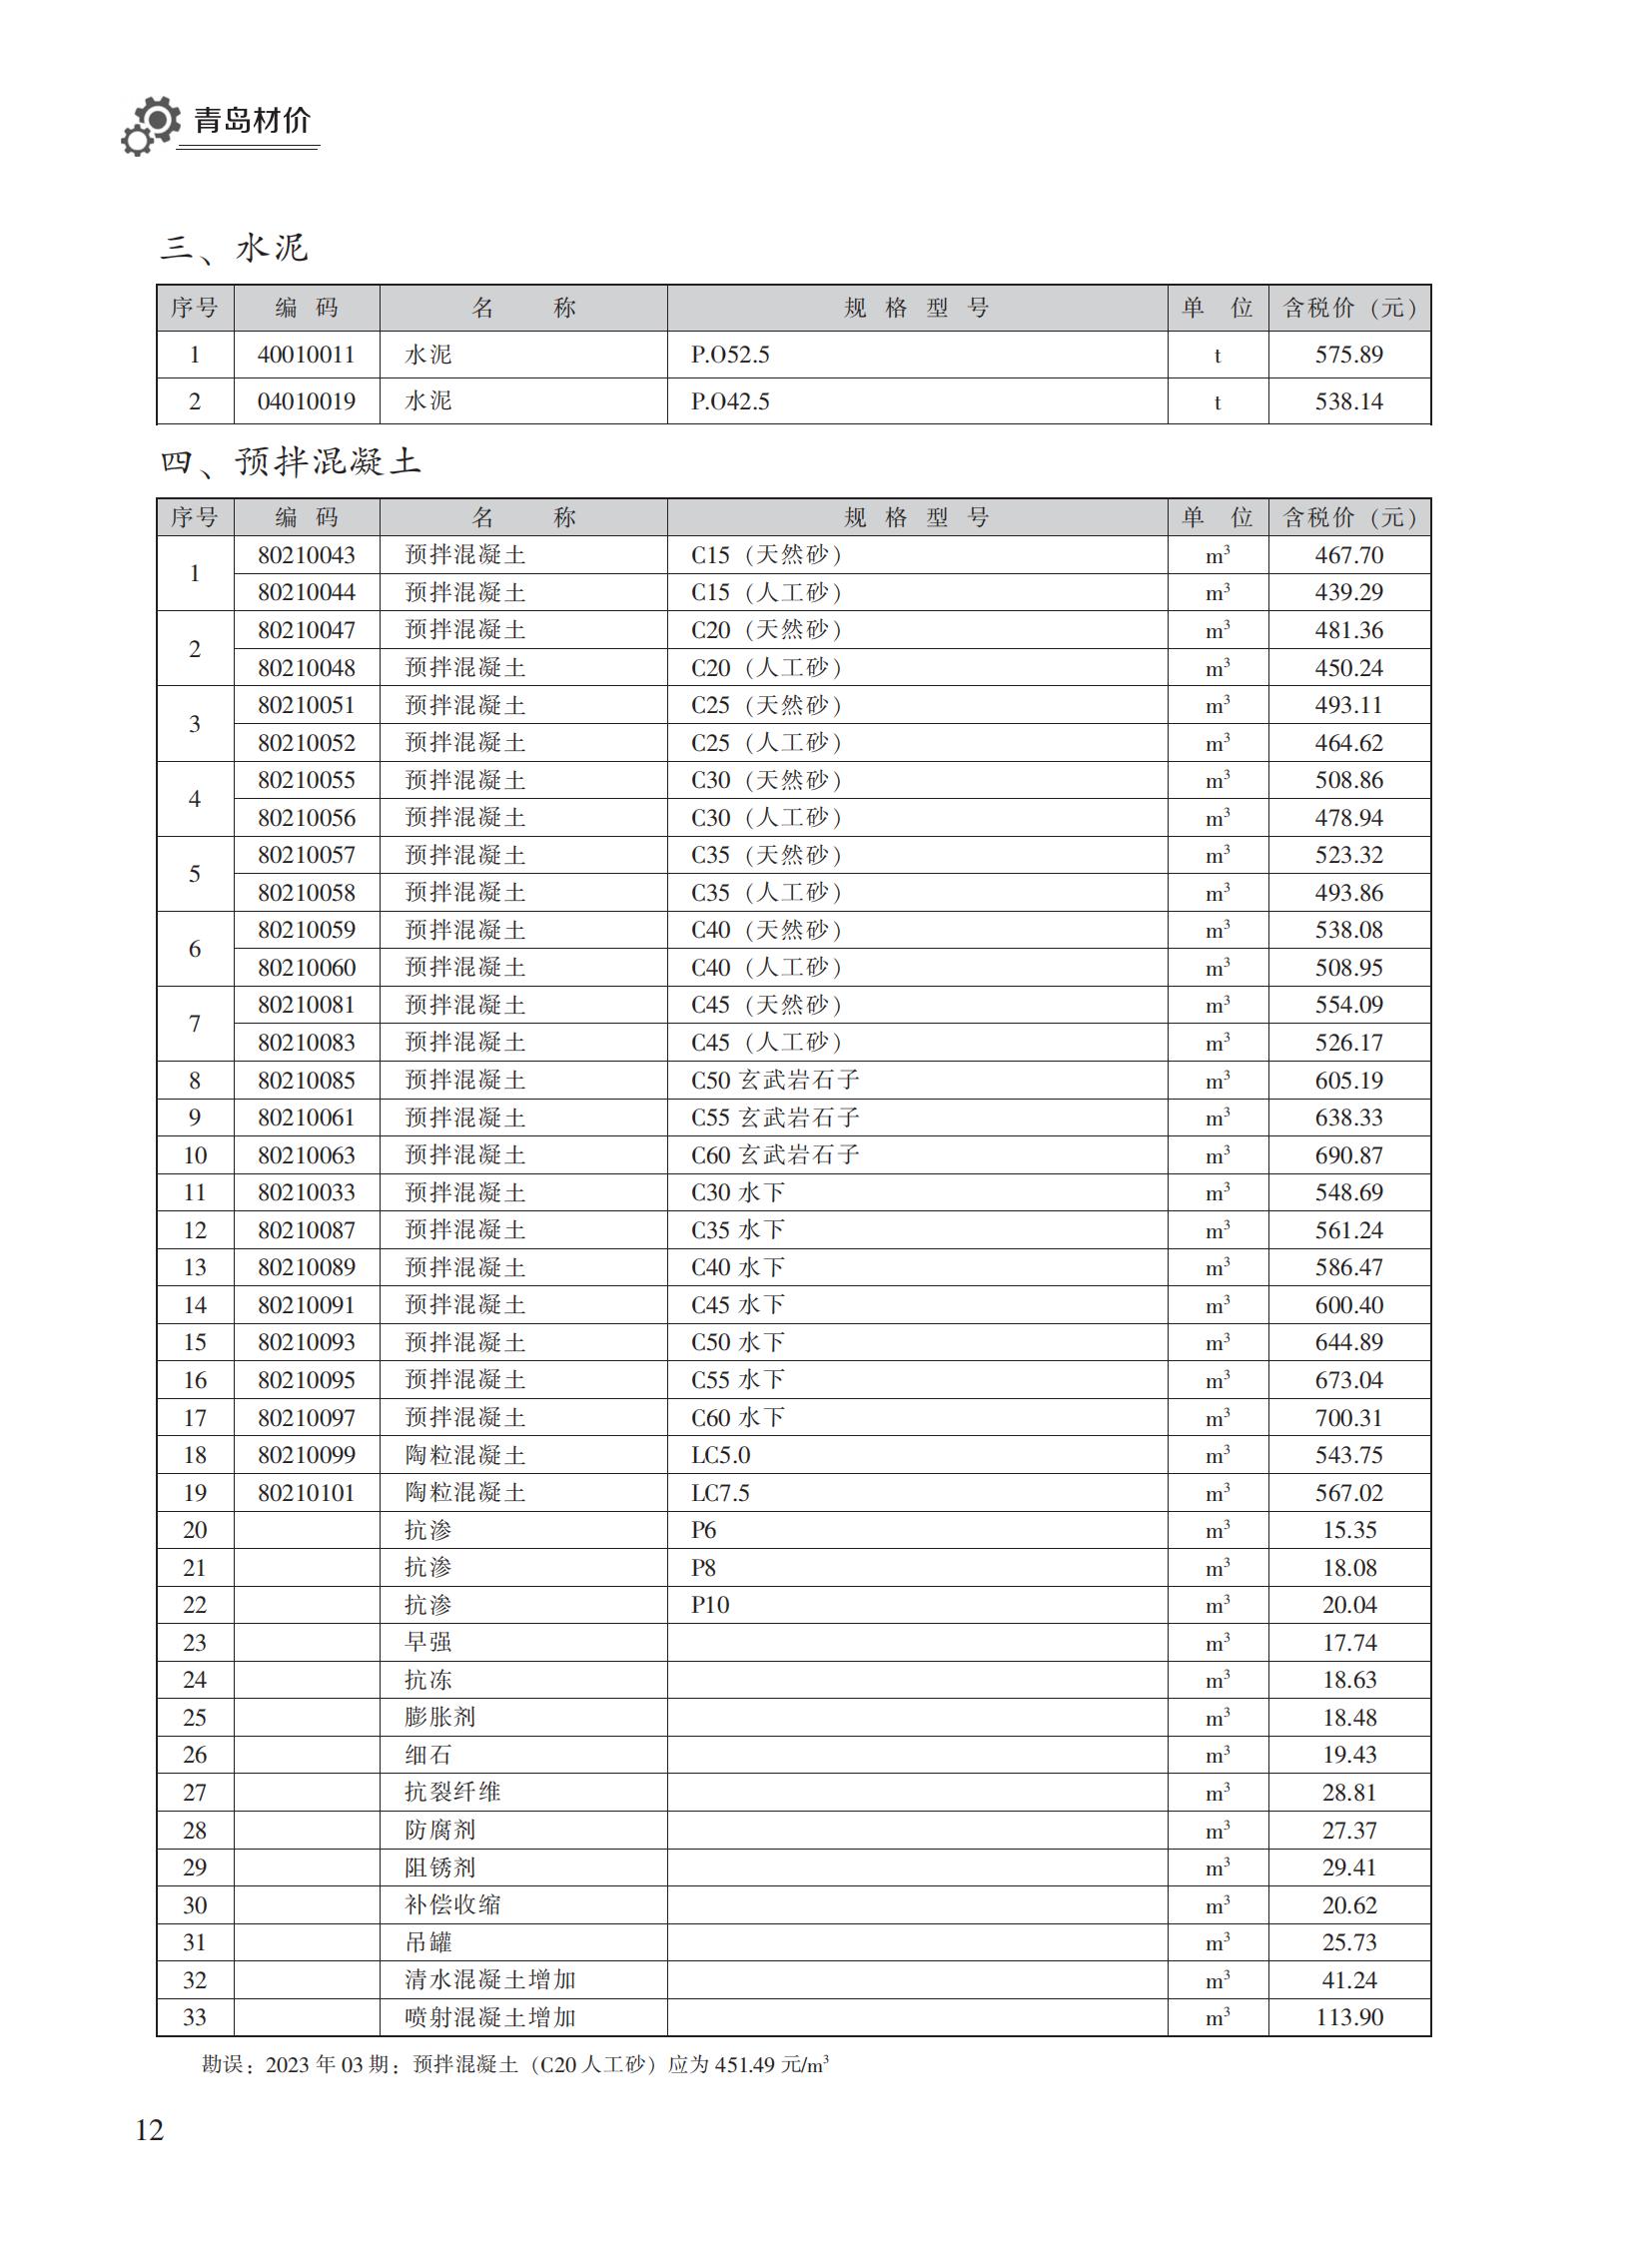 2023年4月青岛市建设工程材料价格及造价指数_11.jpg